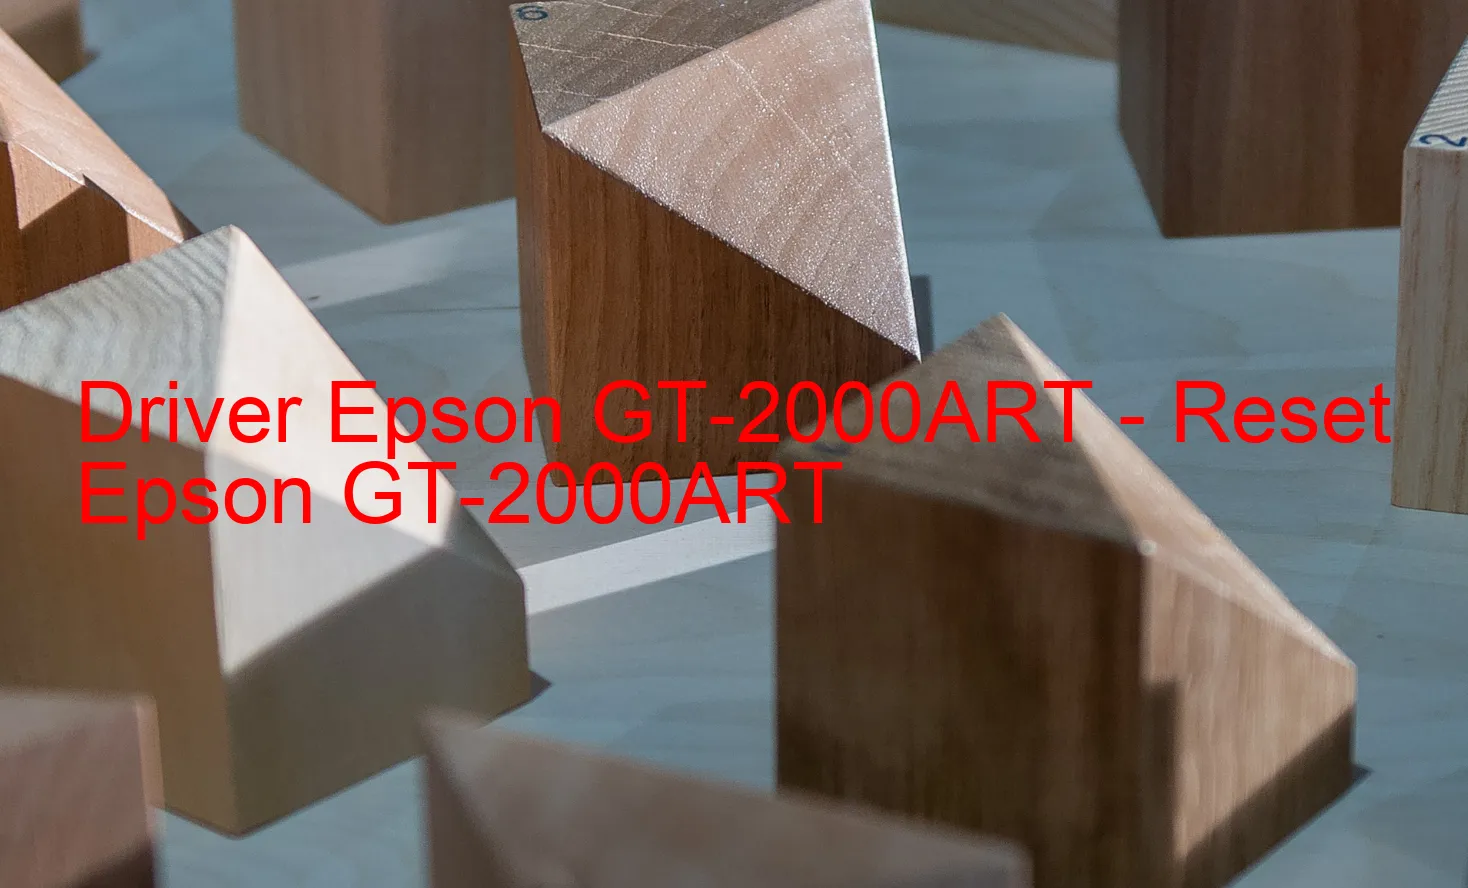 Epson GT-2000ARTのドライバー、Epson GT-2000ARTのリセットソフトウェア